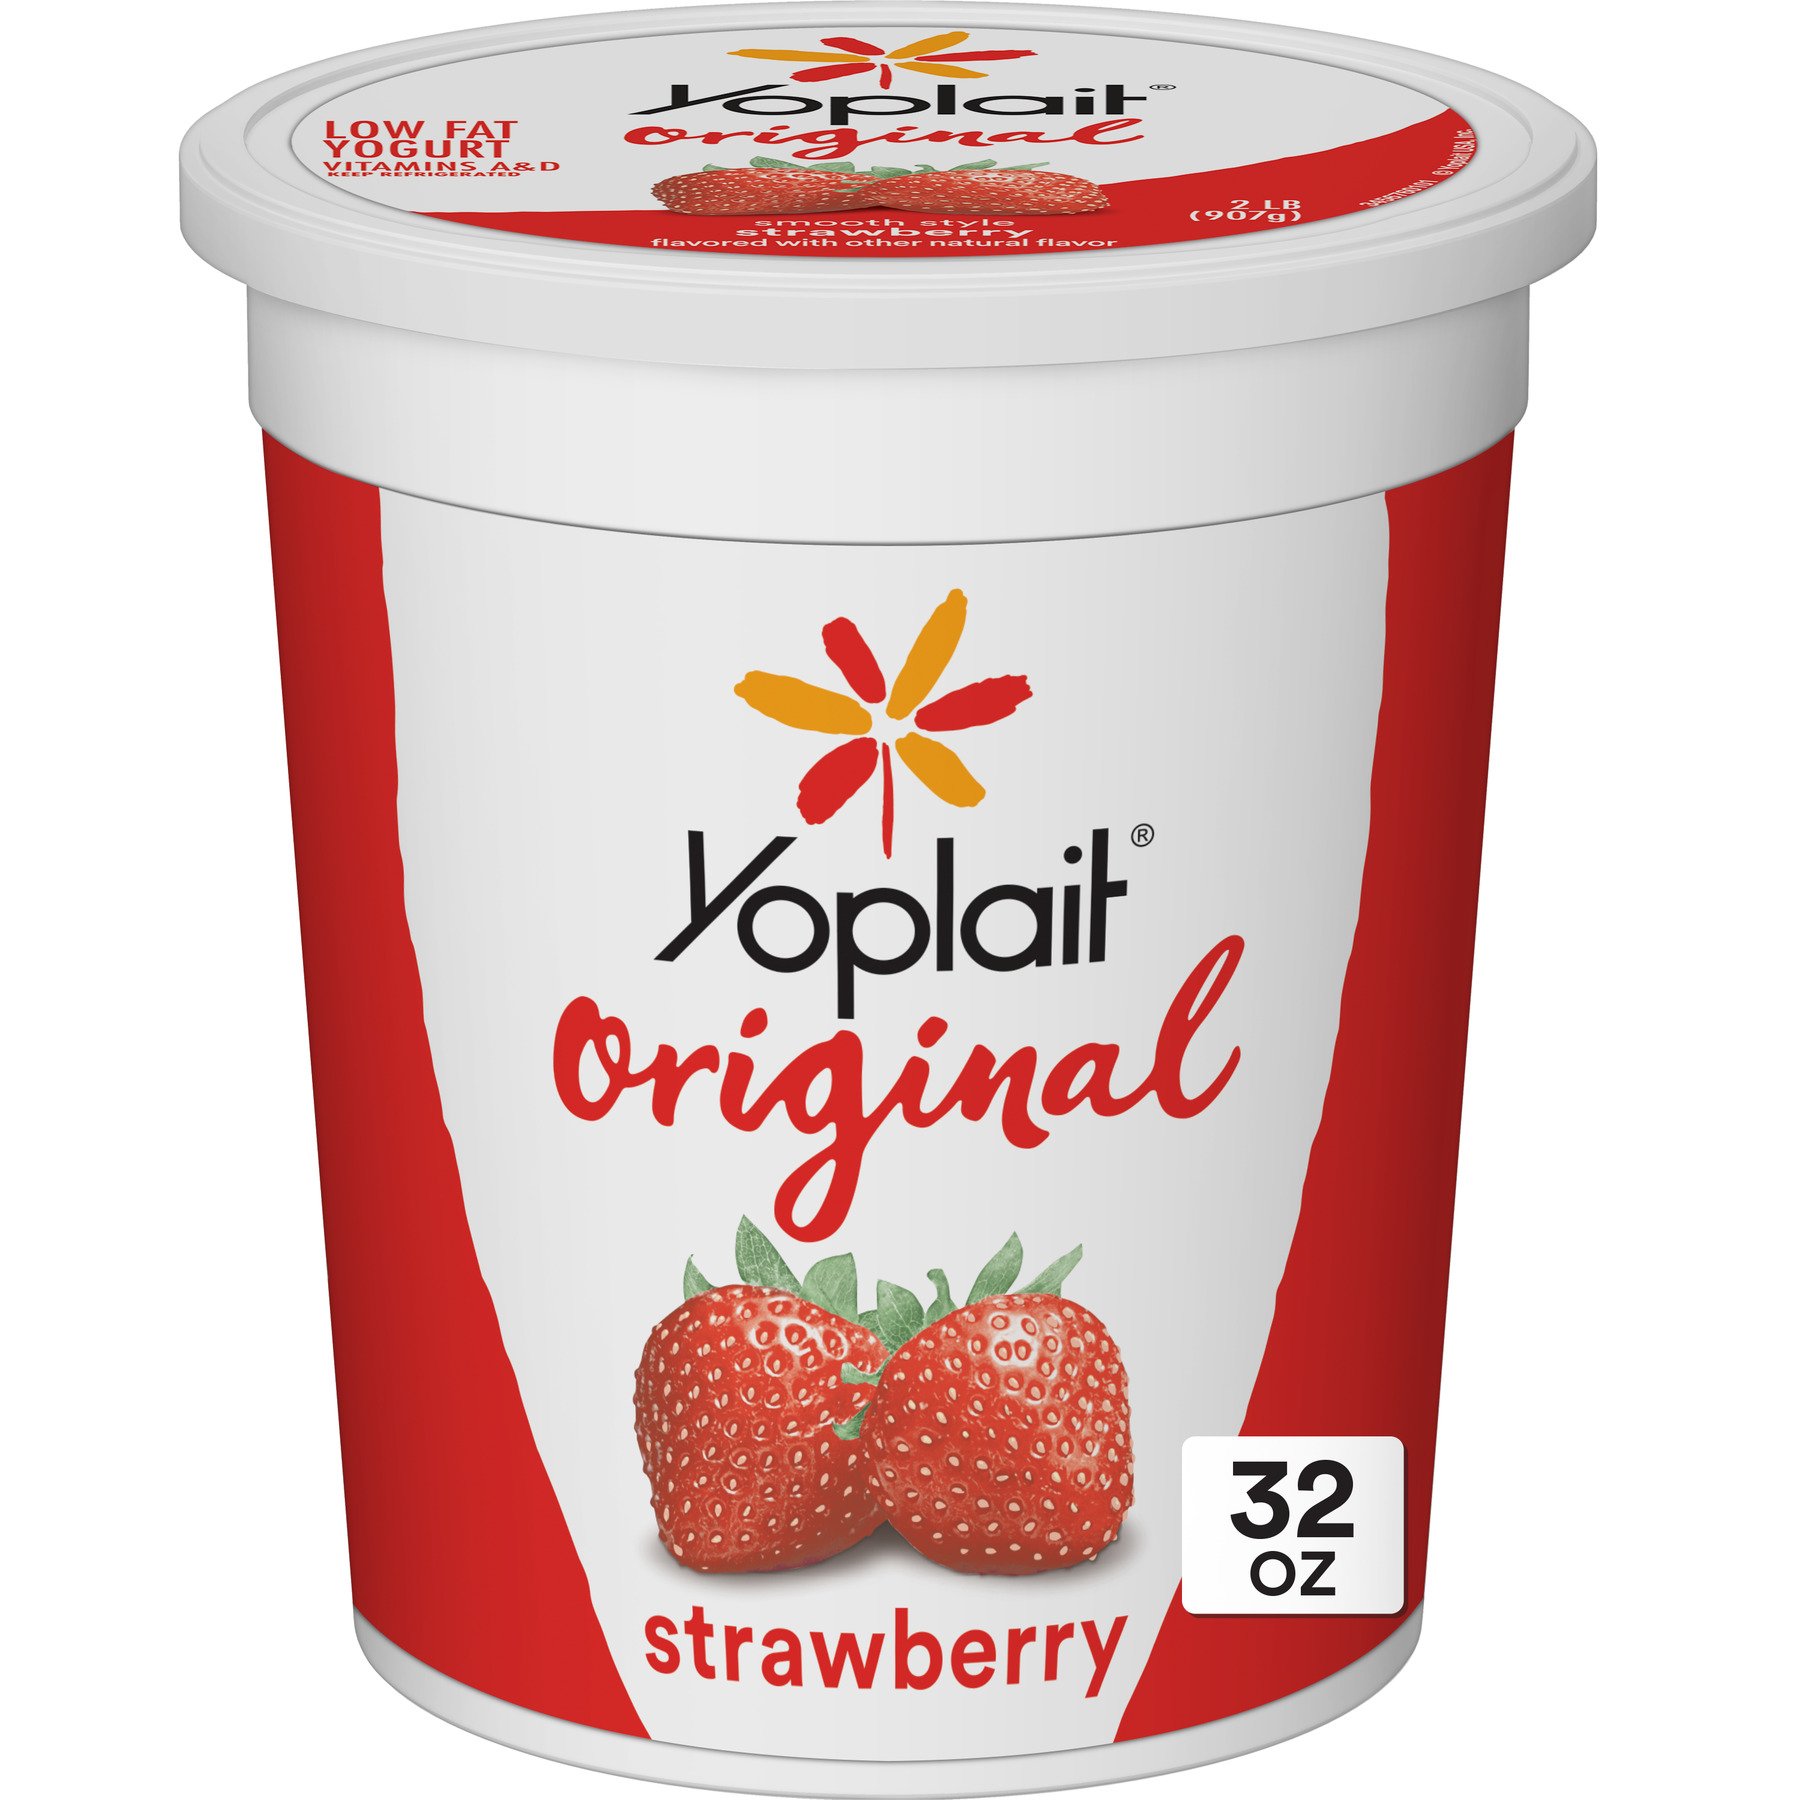 Yoplait Original Strawberry, Gluten Free Yogurt, 32 oz Tub ...